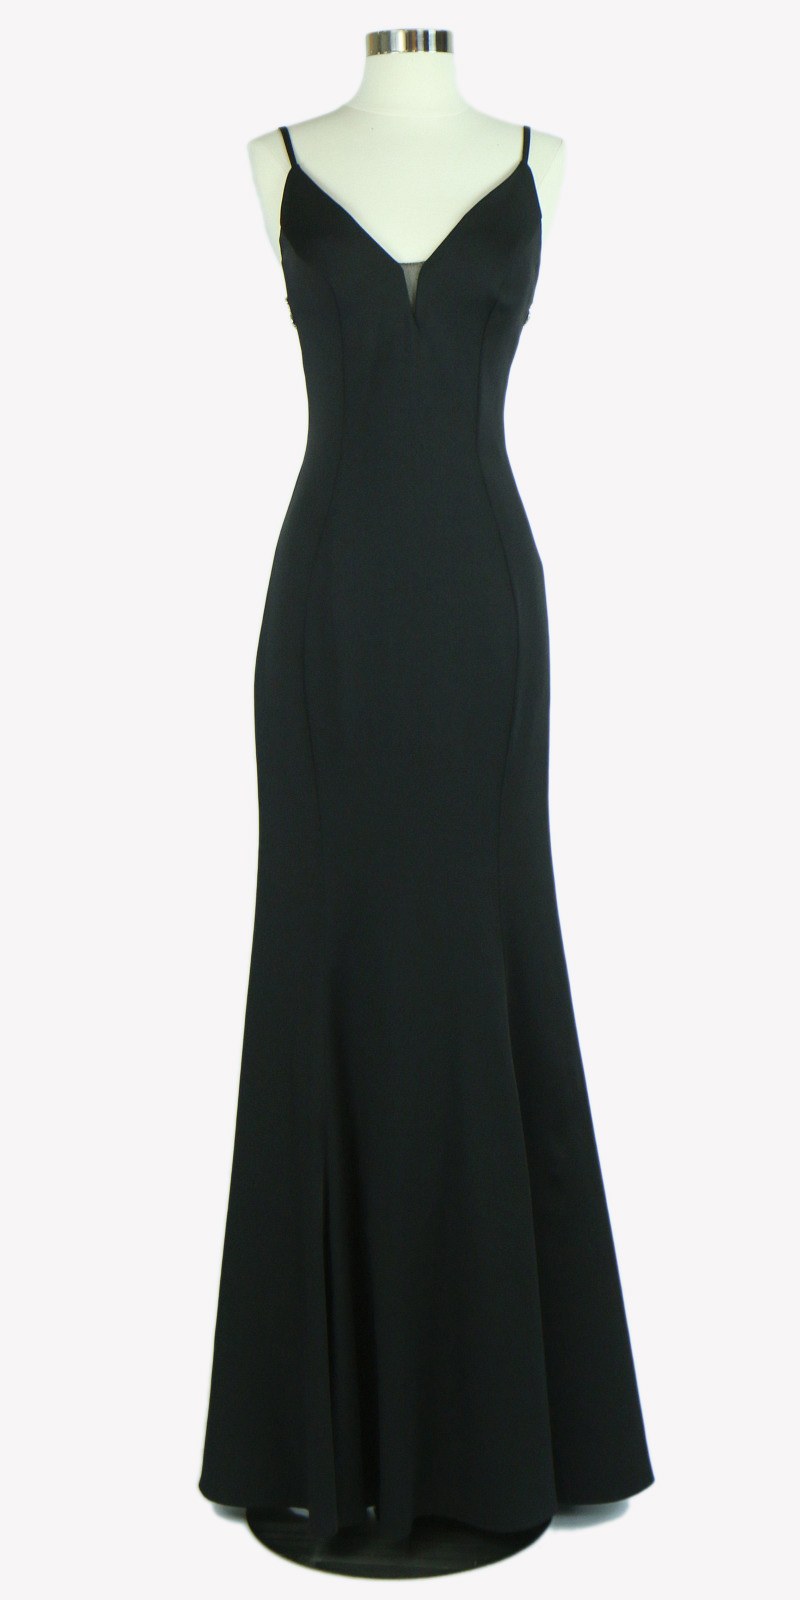 Black Open Embellished Back Long Formal Dress with V-Neck